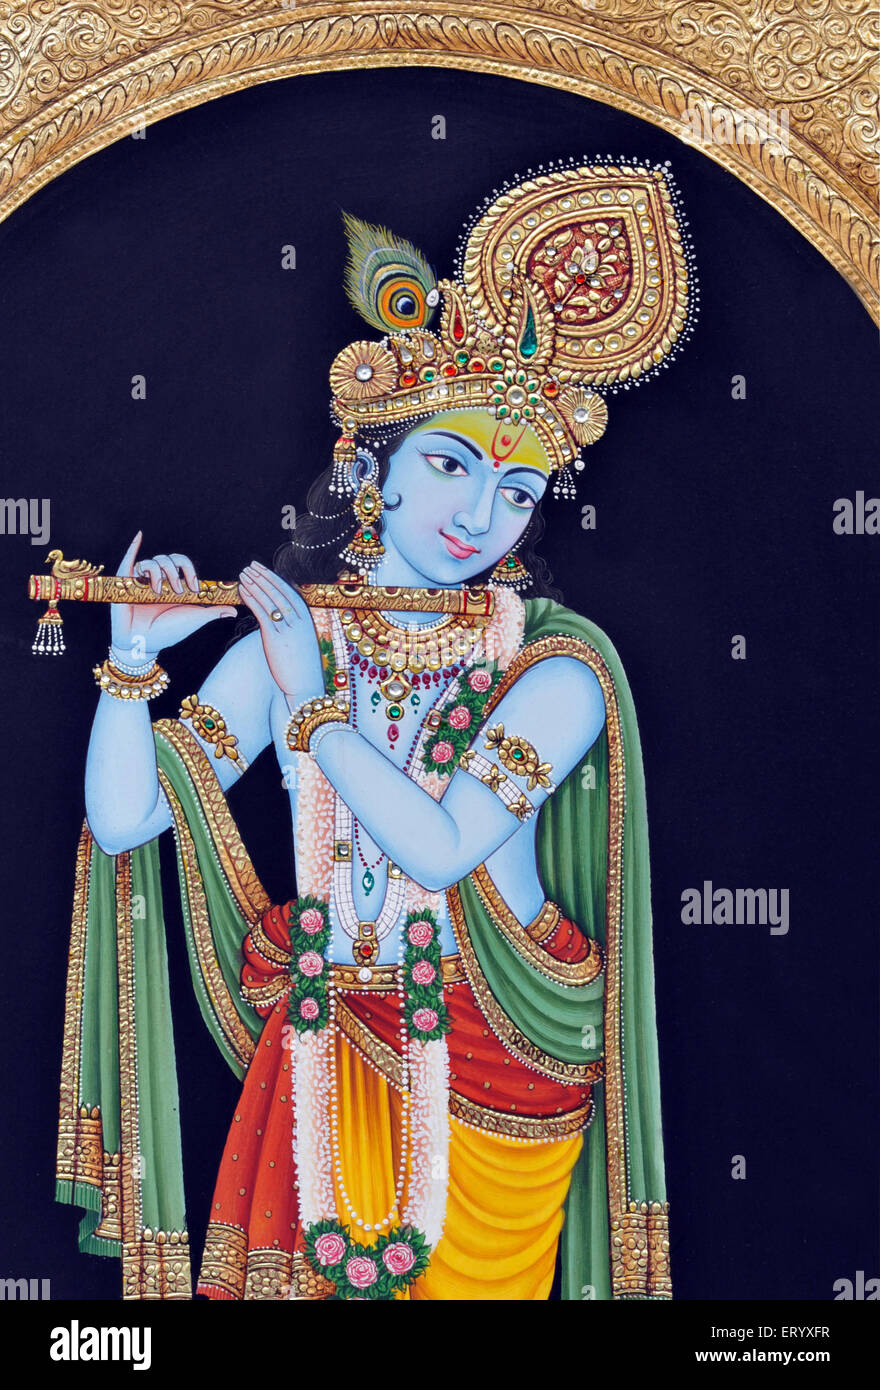 Dieu Lord Krishna jouant de la flûte d'instruments de musique peinture miniature Inde Asie Indien asiatique Banque D'Images